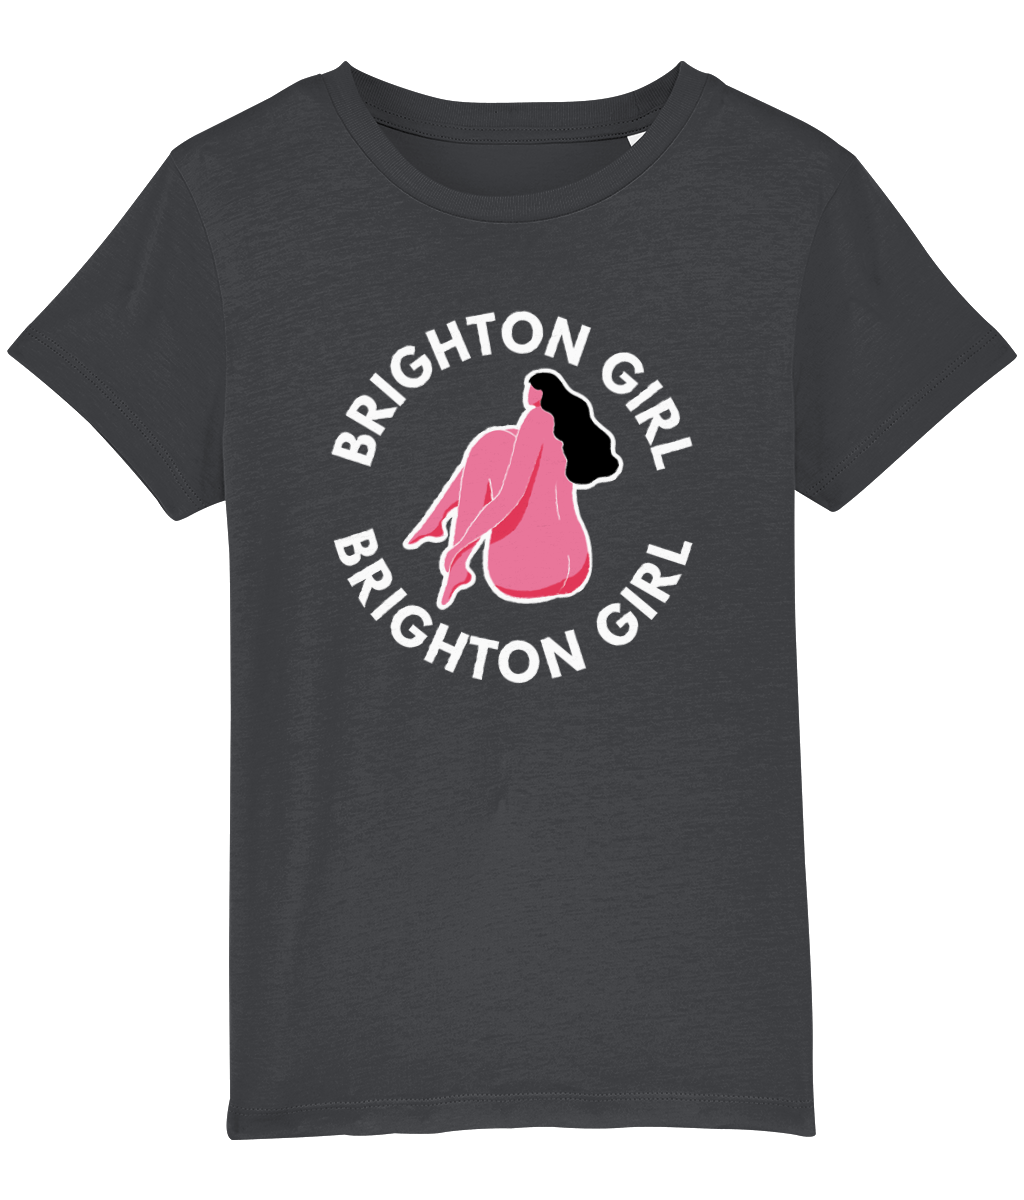 Brighton Girl Teeshirt - Ellis Muddle design (Kids Size)